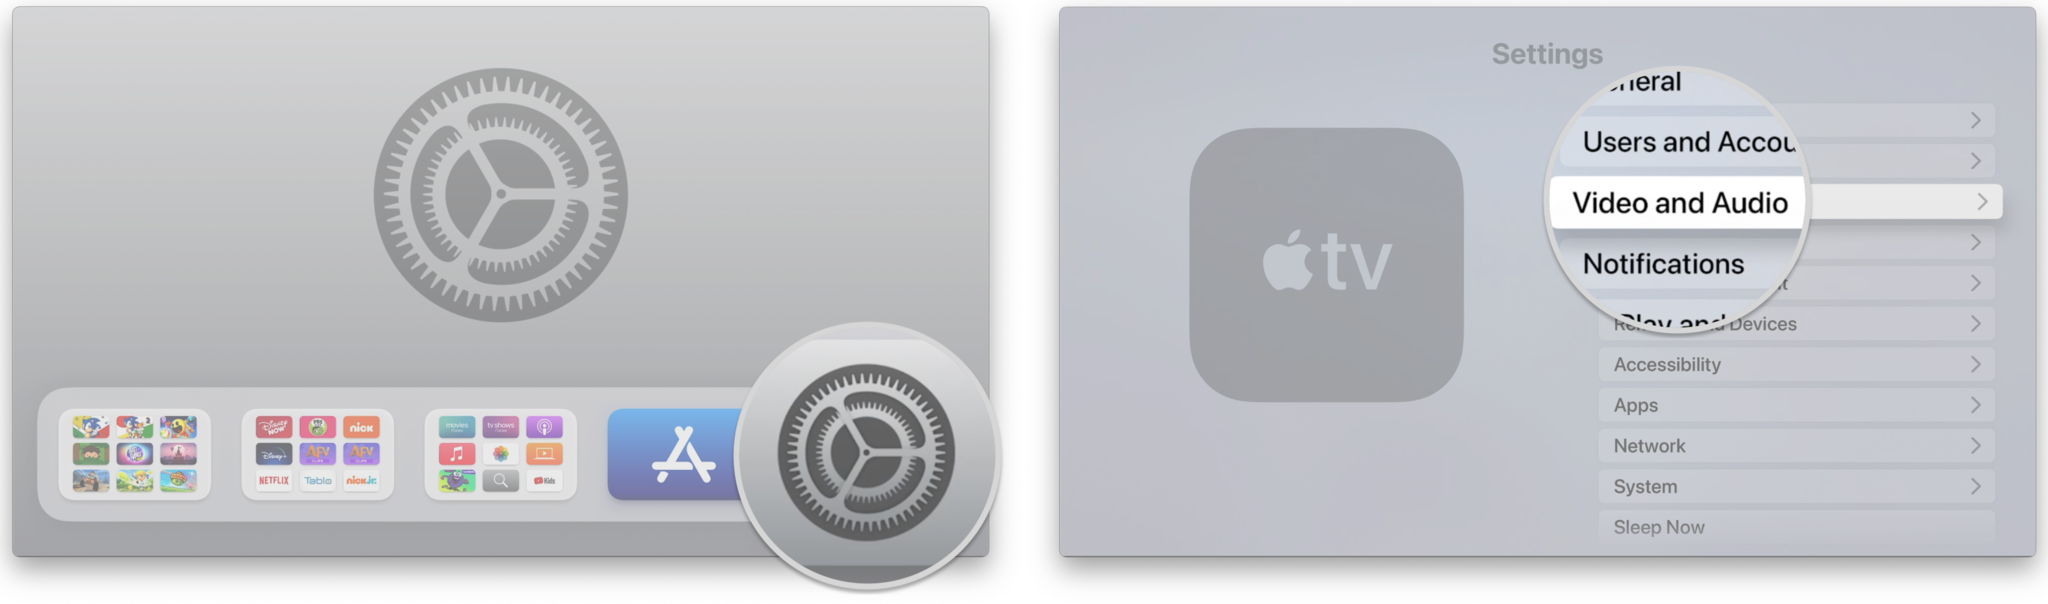 Comment désactiver le HDR sur Apple TV en affichant les étapes : ouvrez Paramètres, cliquez sur Vidéo et audio